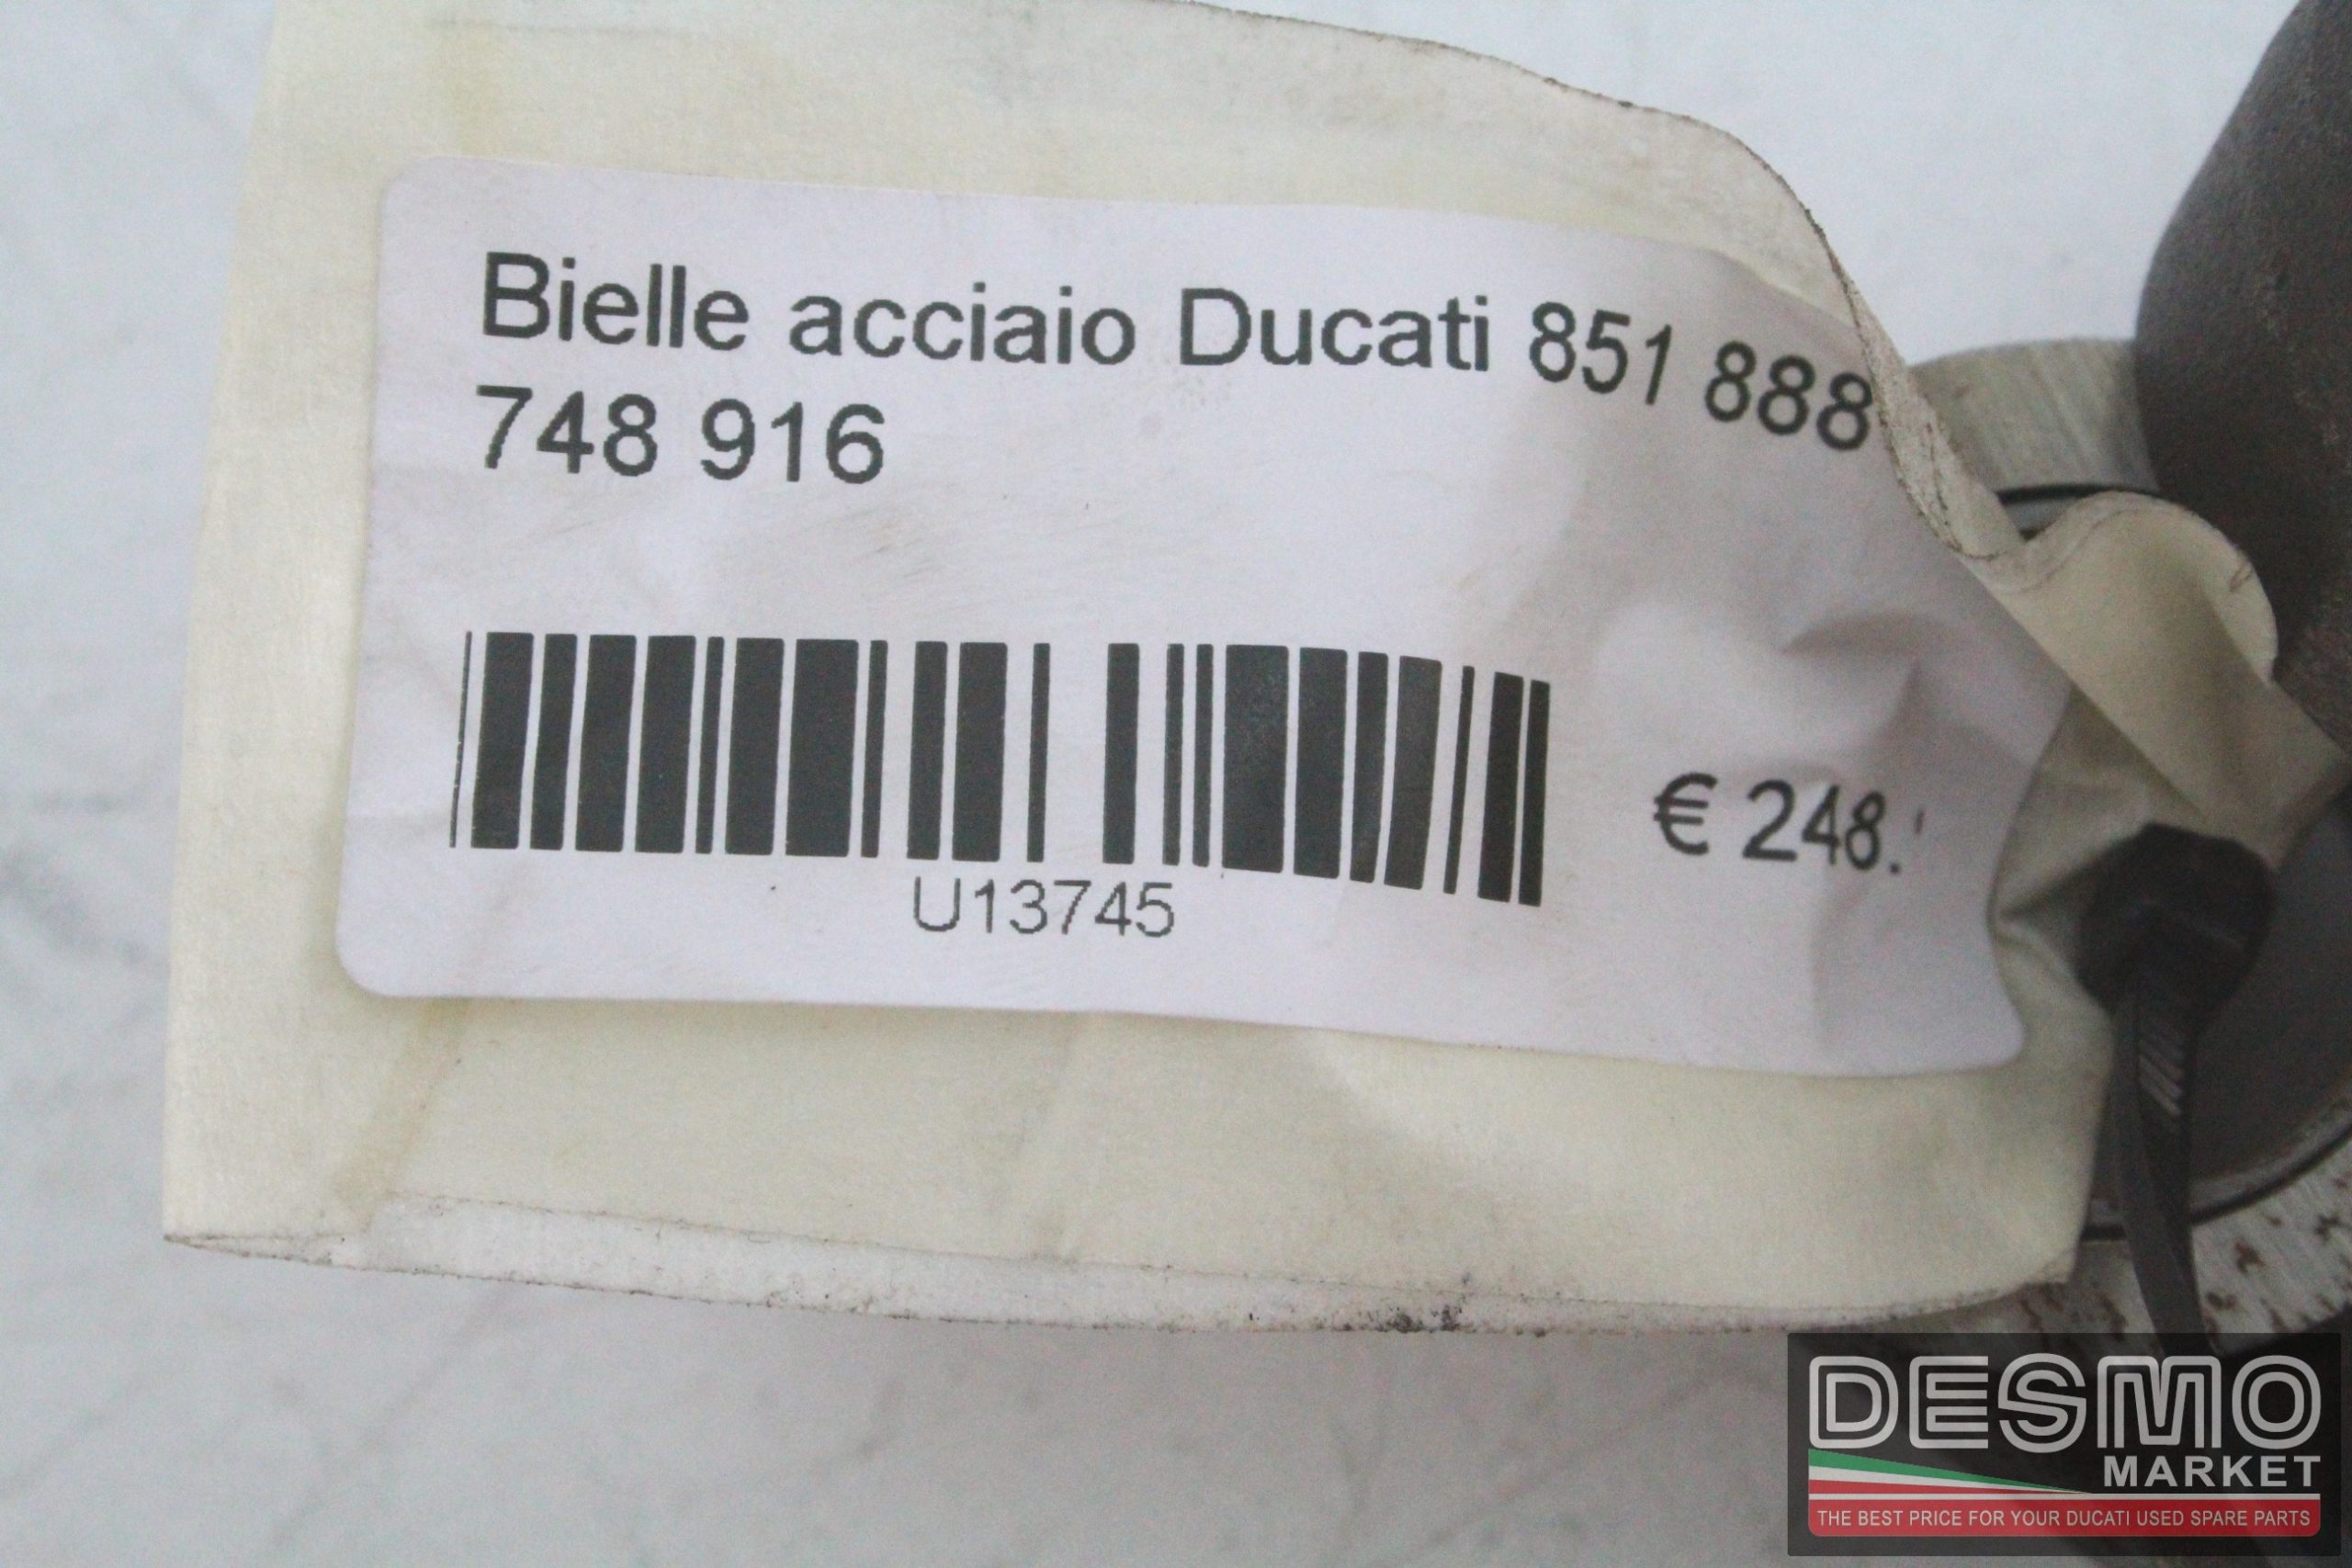 Bielle acciaio Ducati 851 888 sbk 748 916